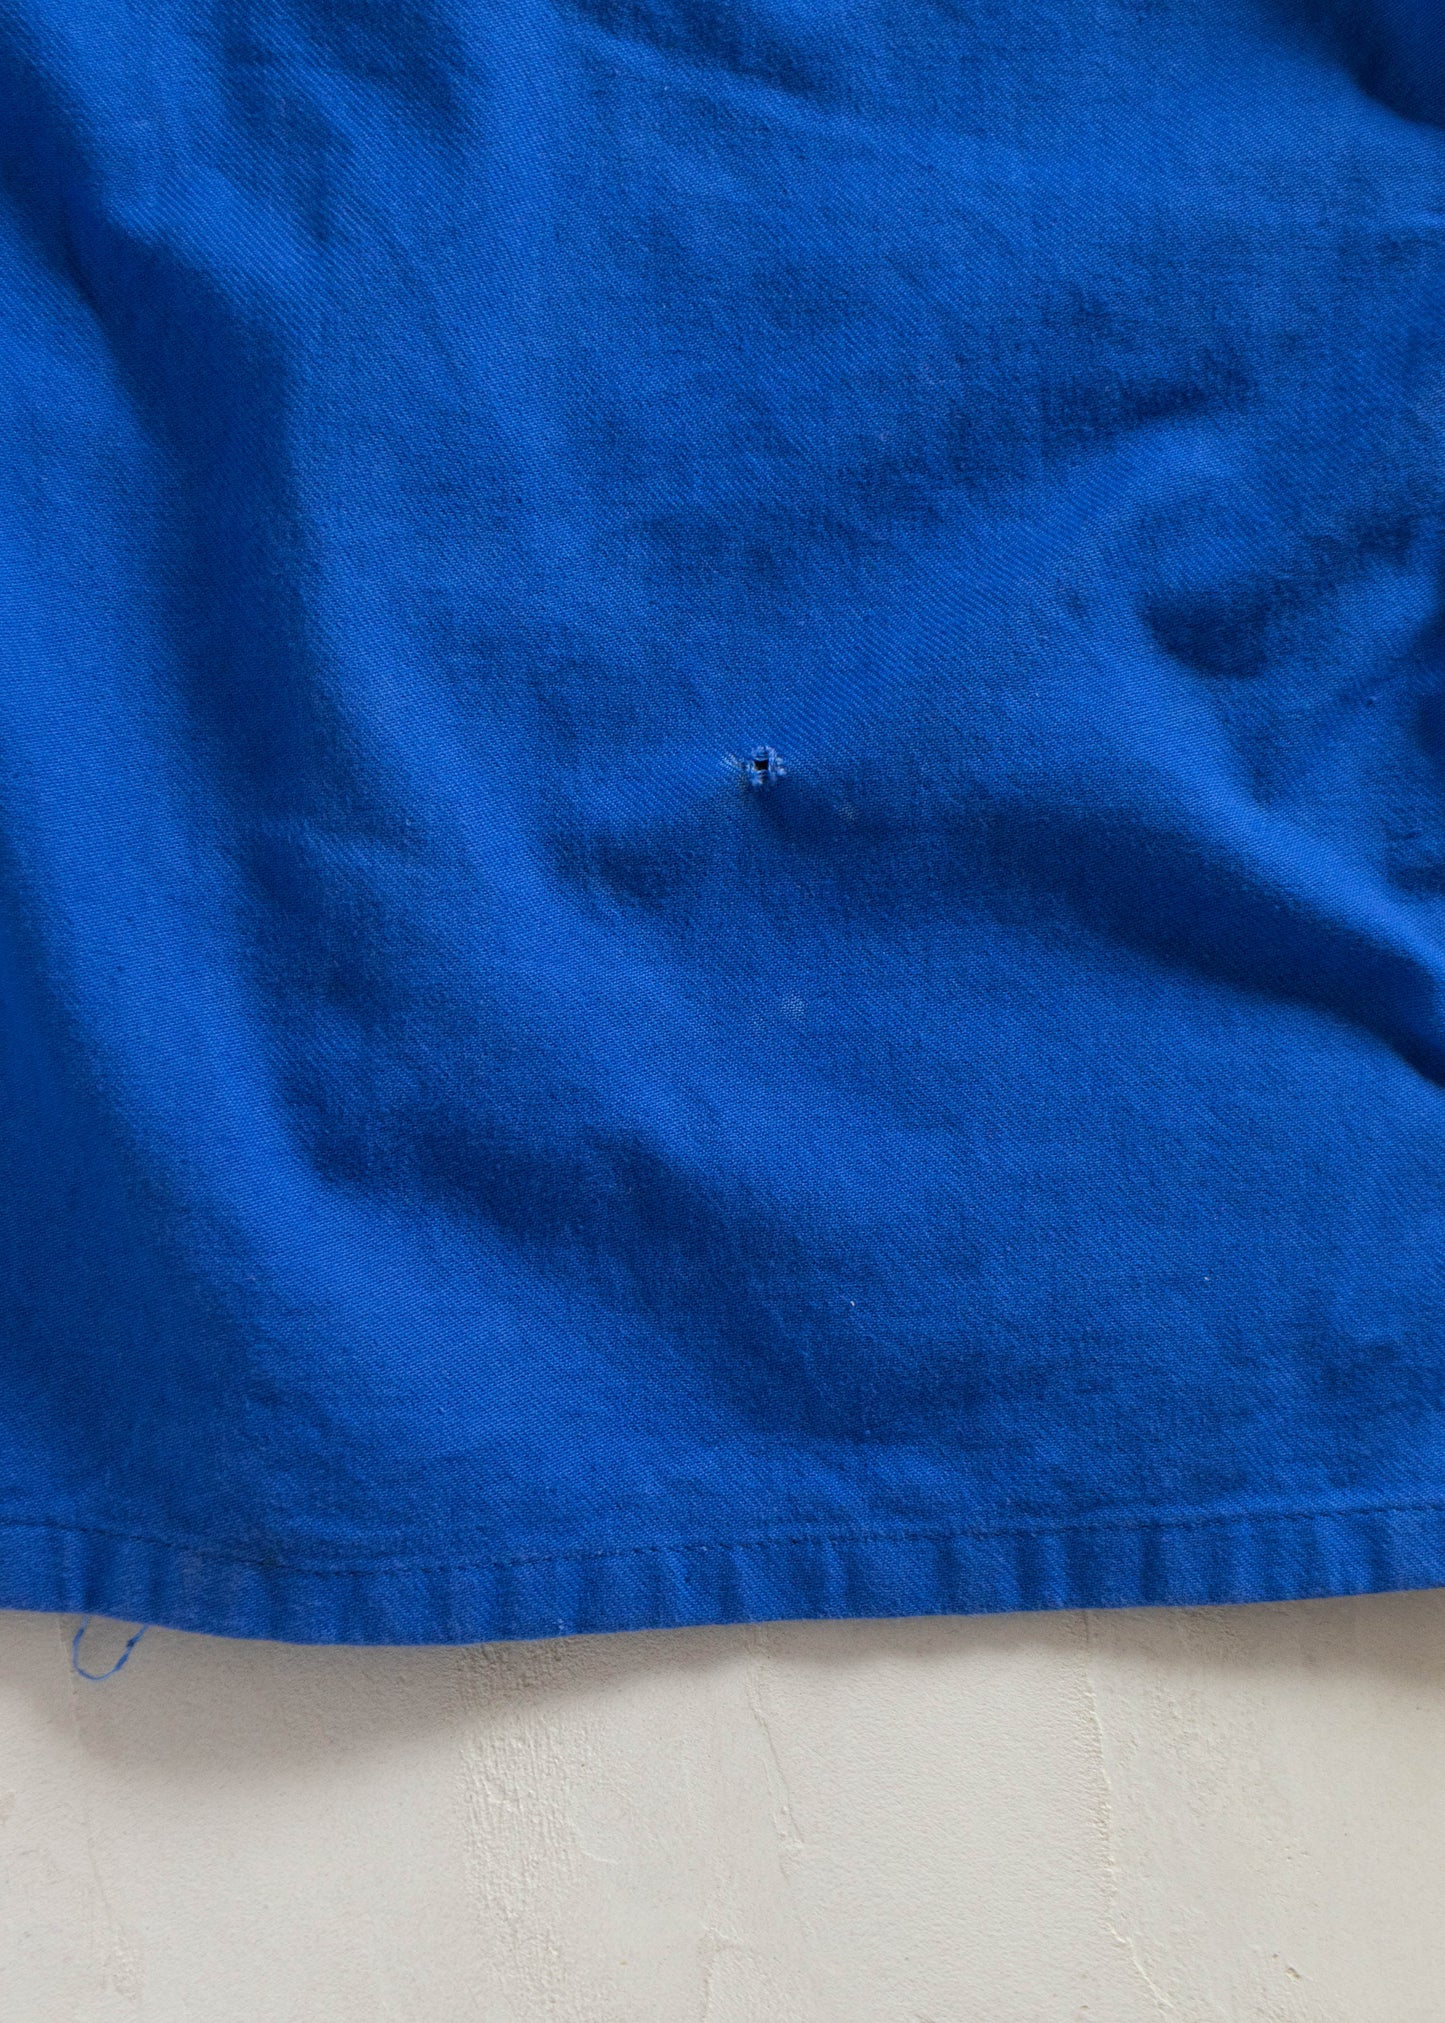 1980s Charvet Bleu de Travail European Workwear Chore Jacket Size M/L